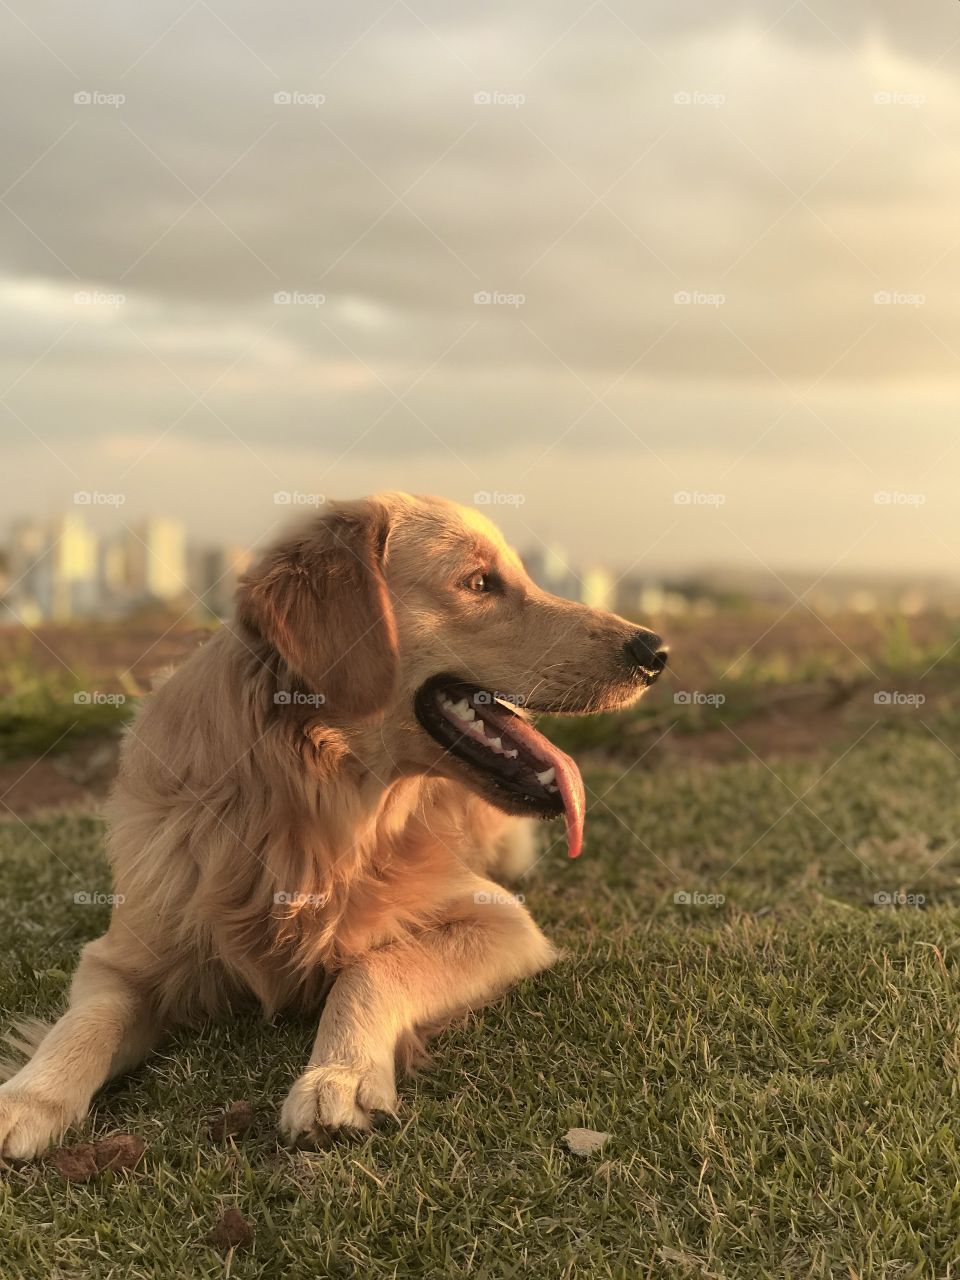 Sunset dog 